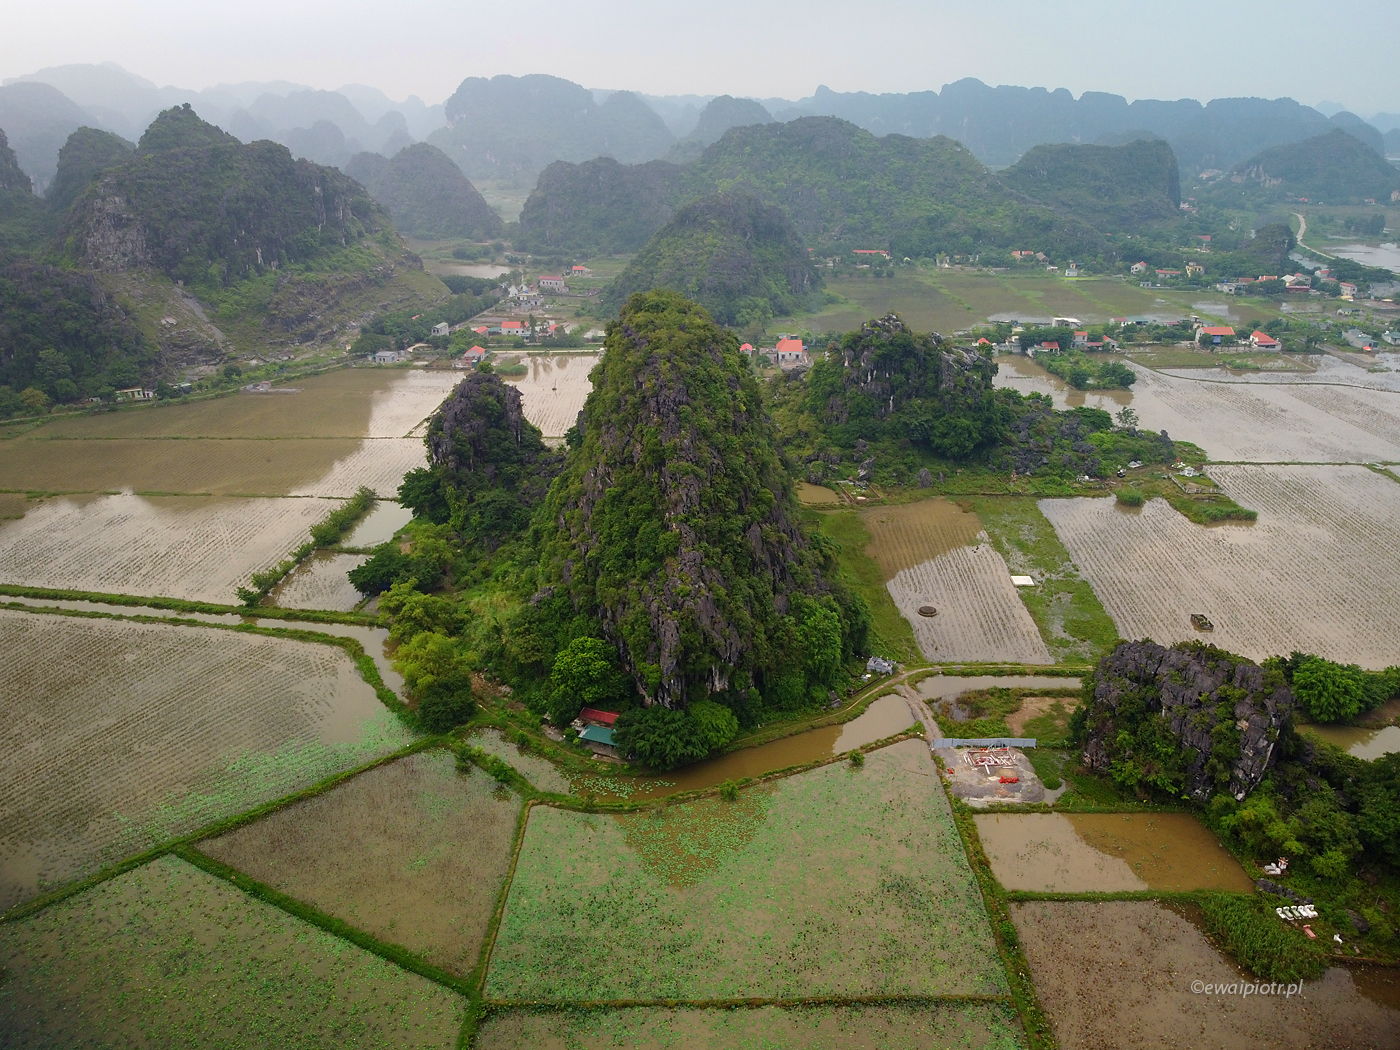 Wzgórza Ninh Binh, Wietnam, świat z drona, czy wolno latać dronem w Wietnamie